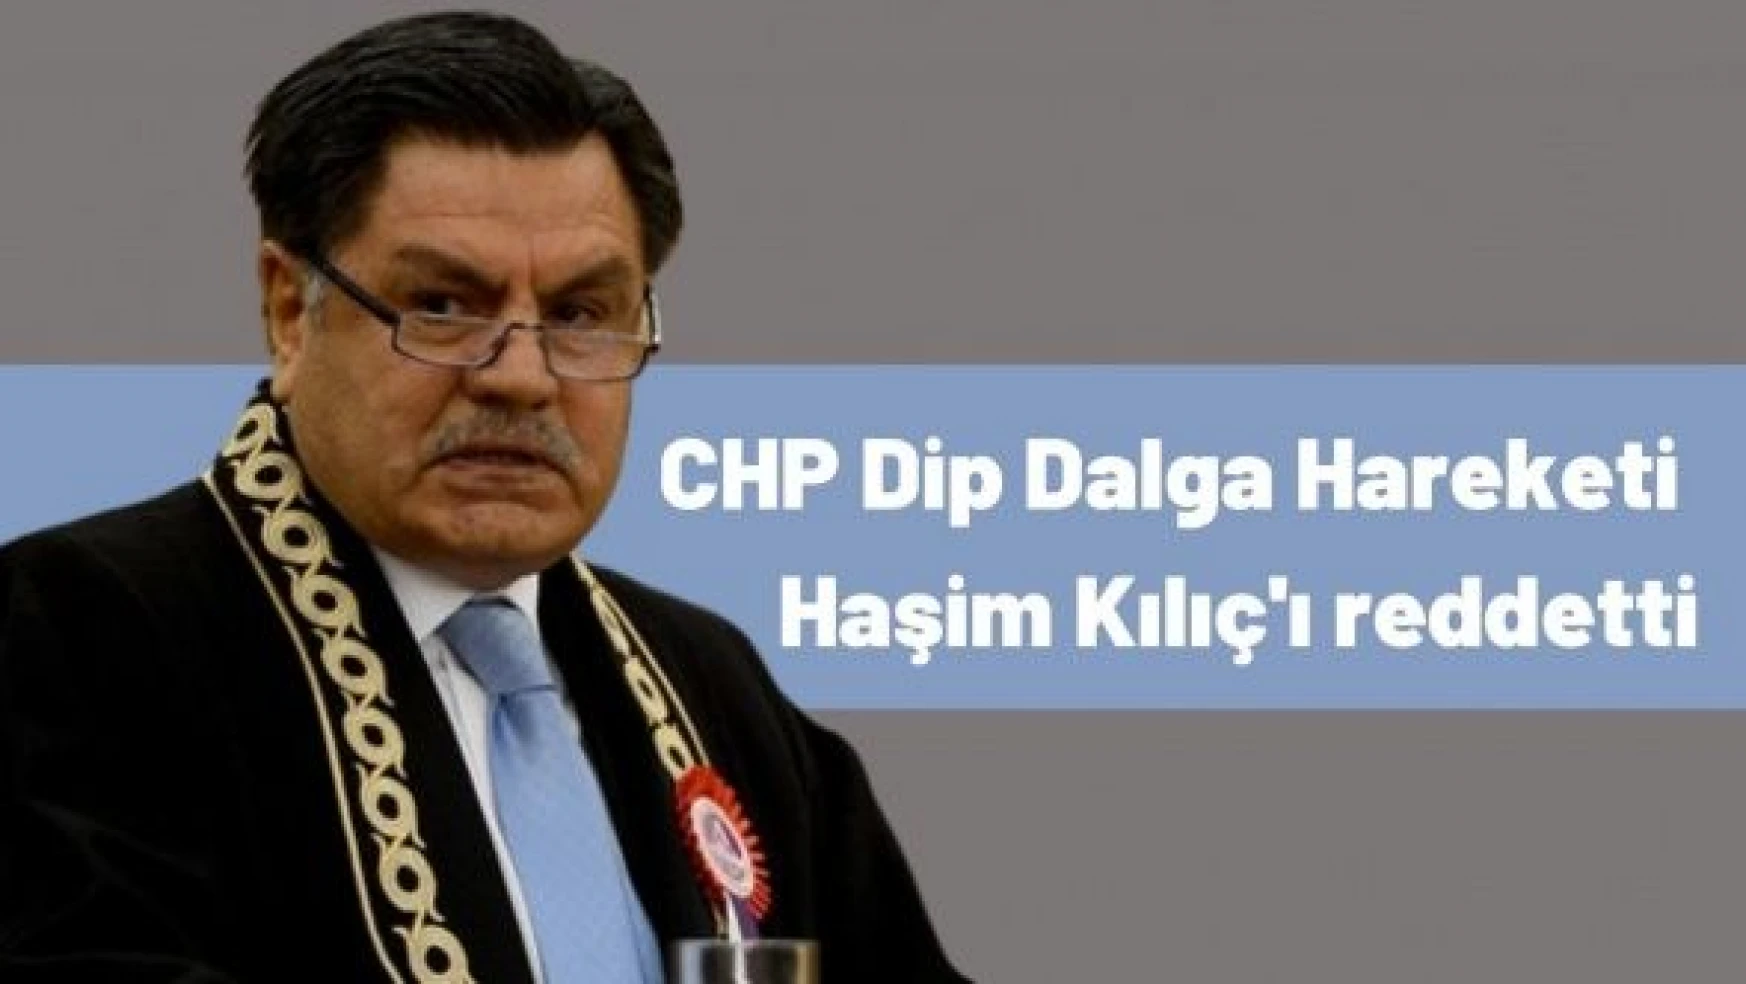 CHP Dip Dalga Hareketi'nden Haşim Kılıç manifestosu